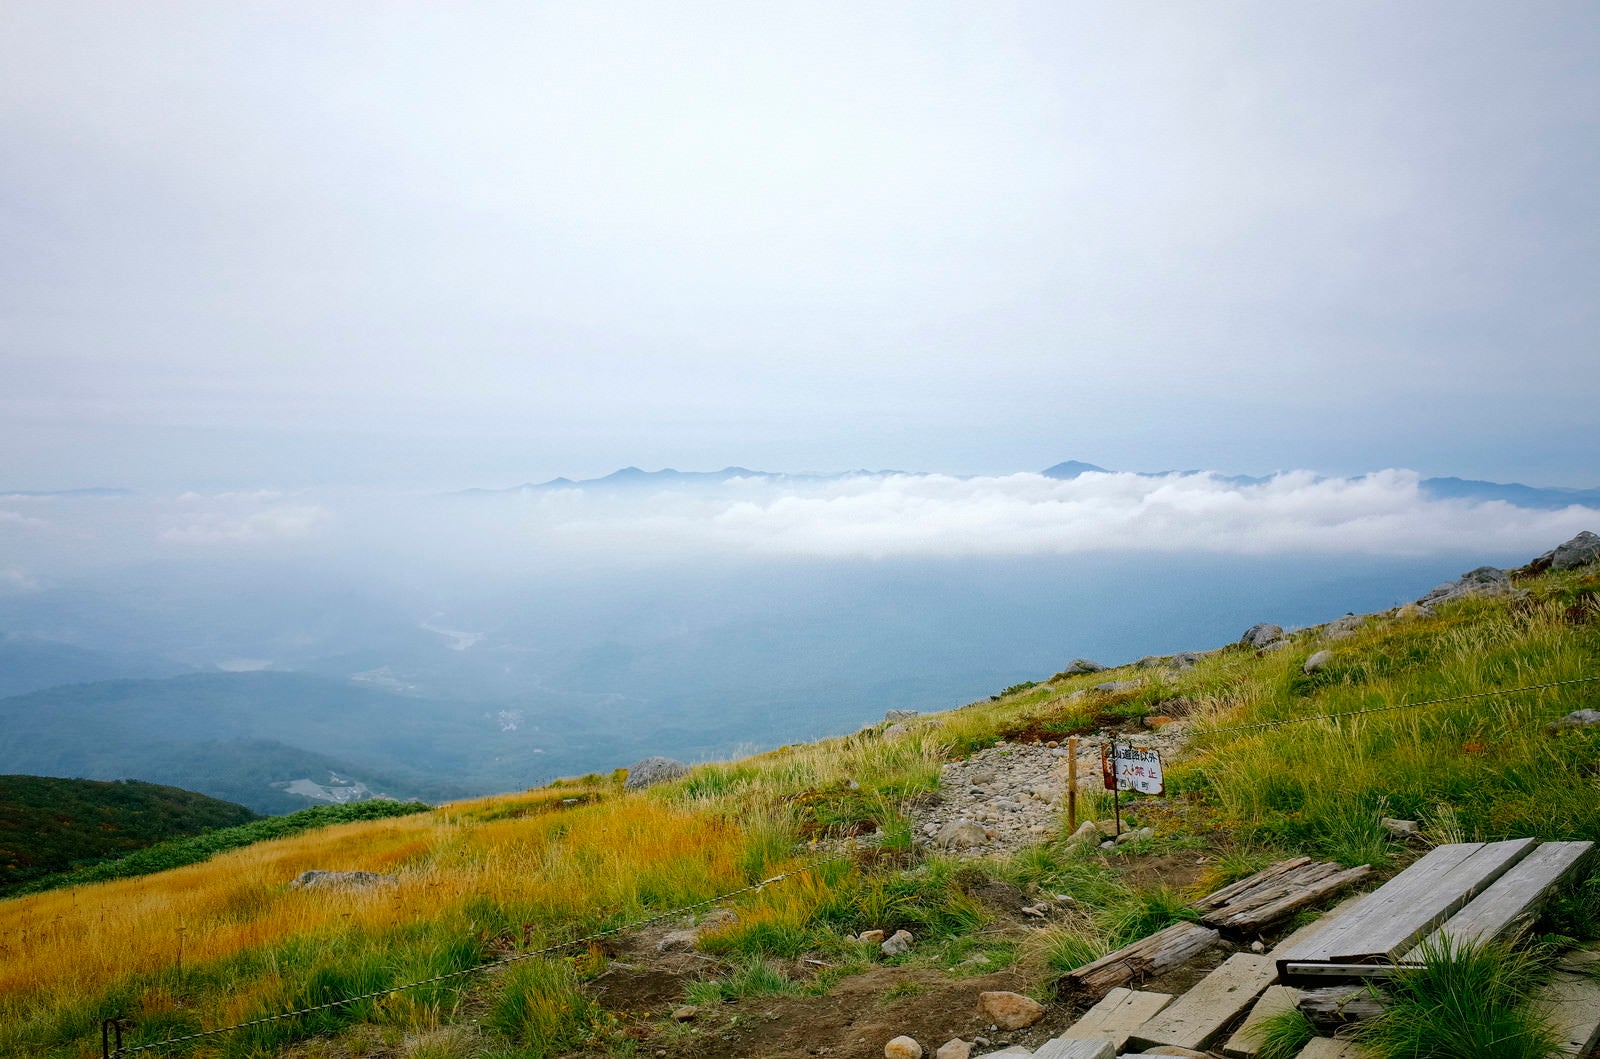 「月山のベンチから見る麓の景色」の写真